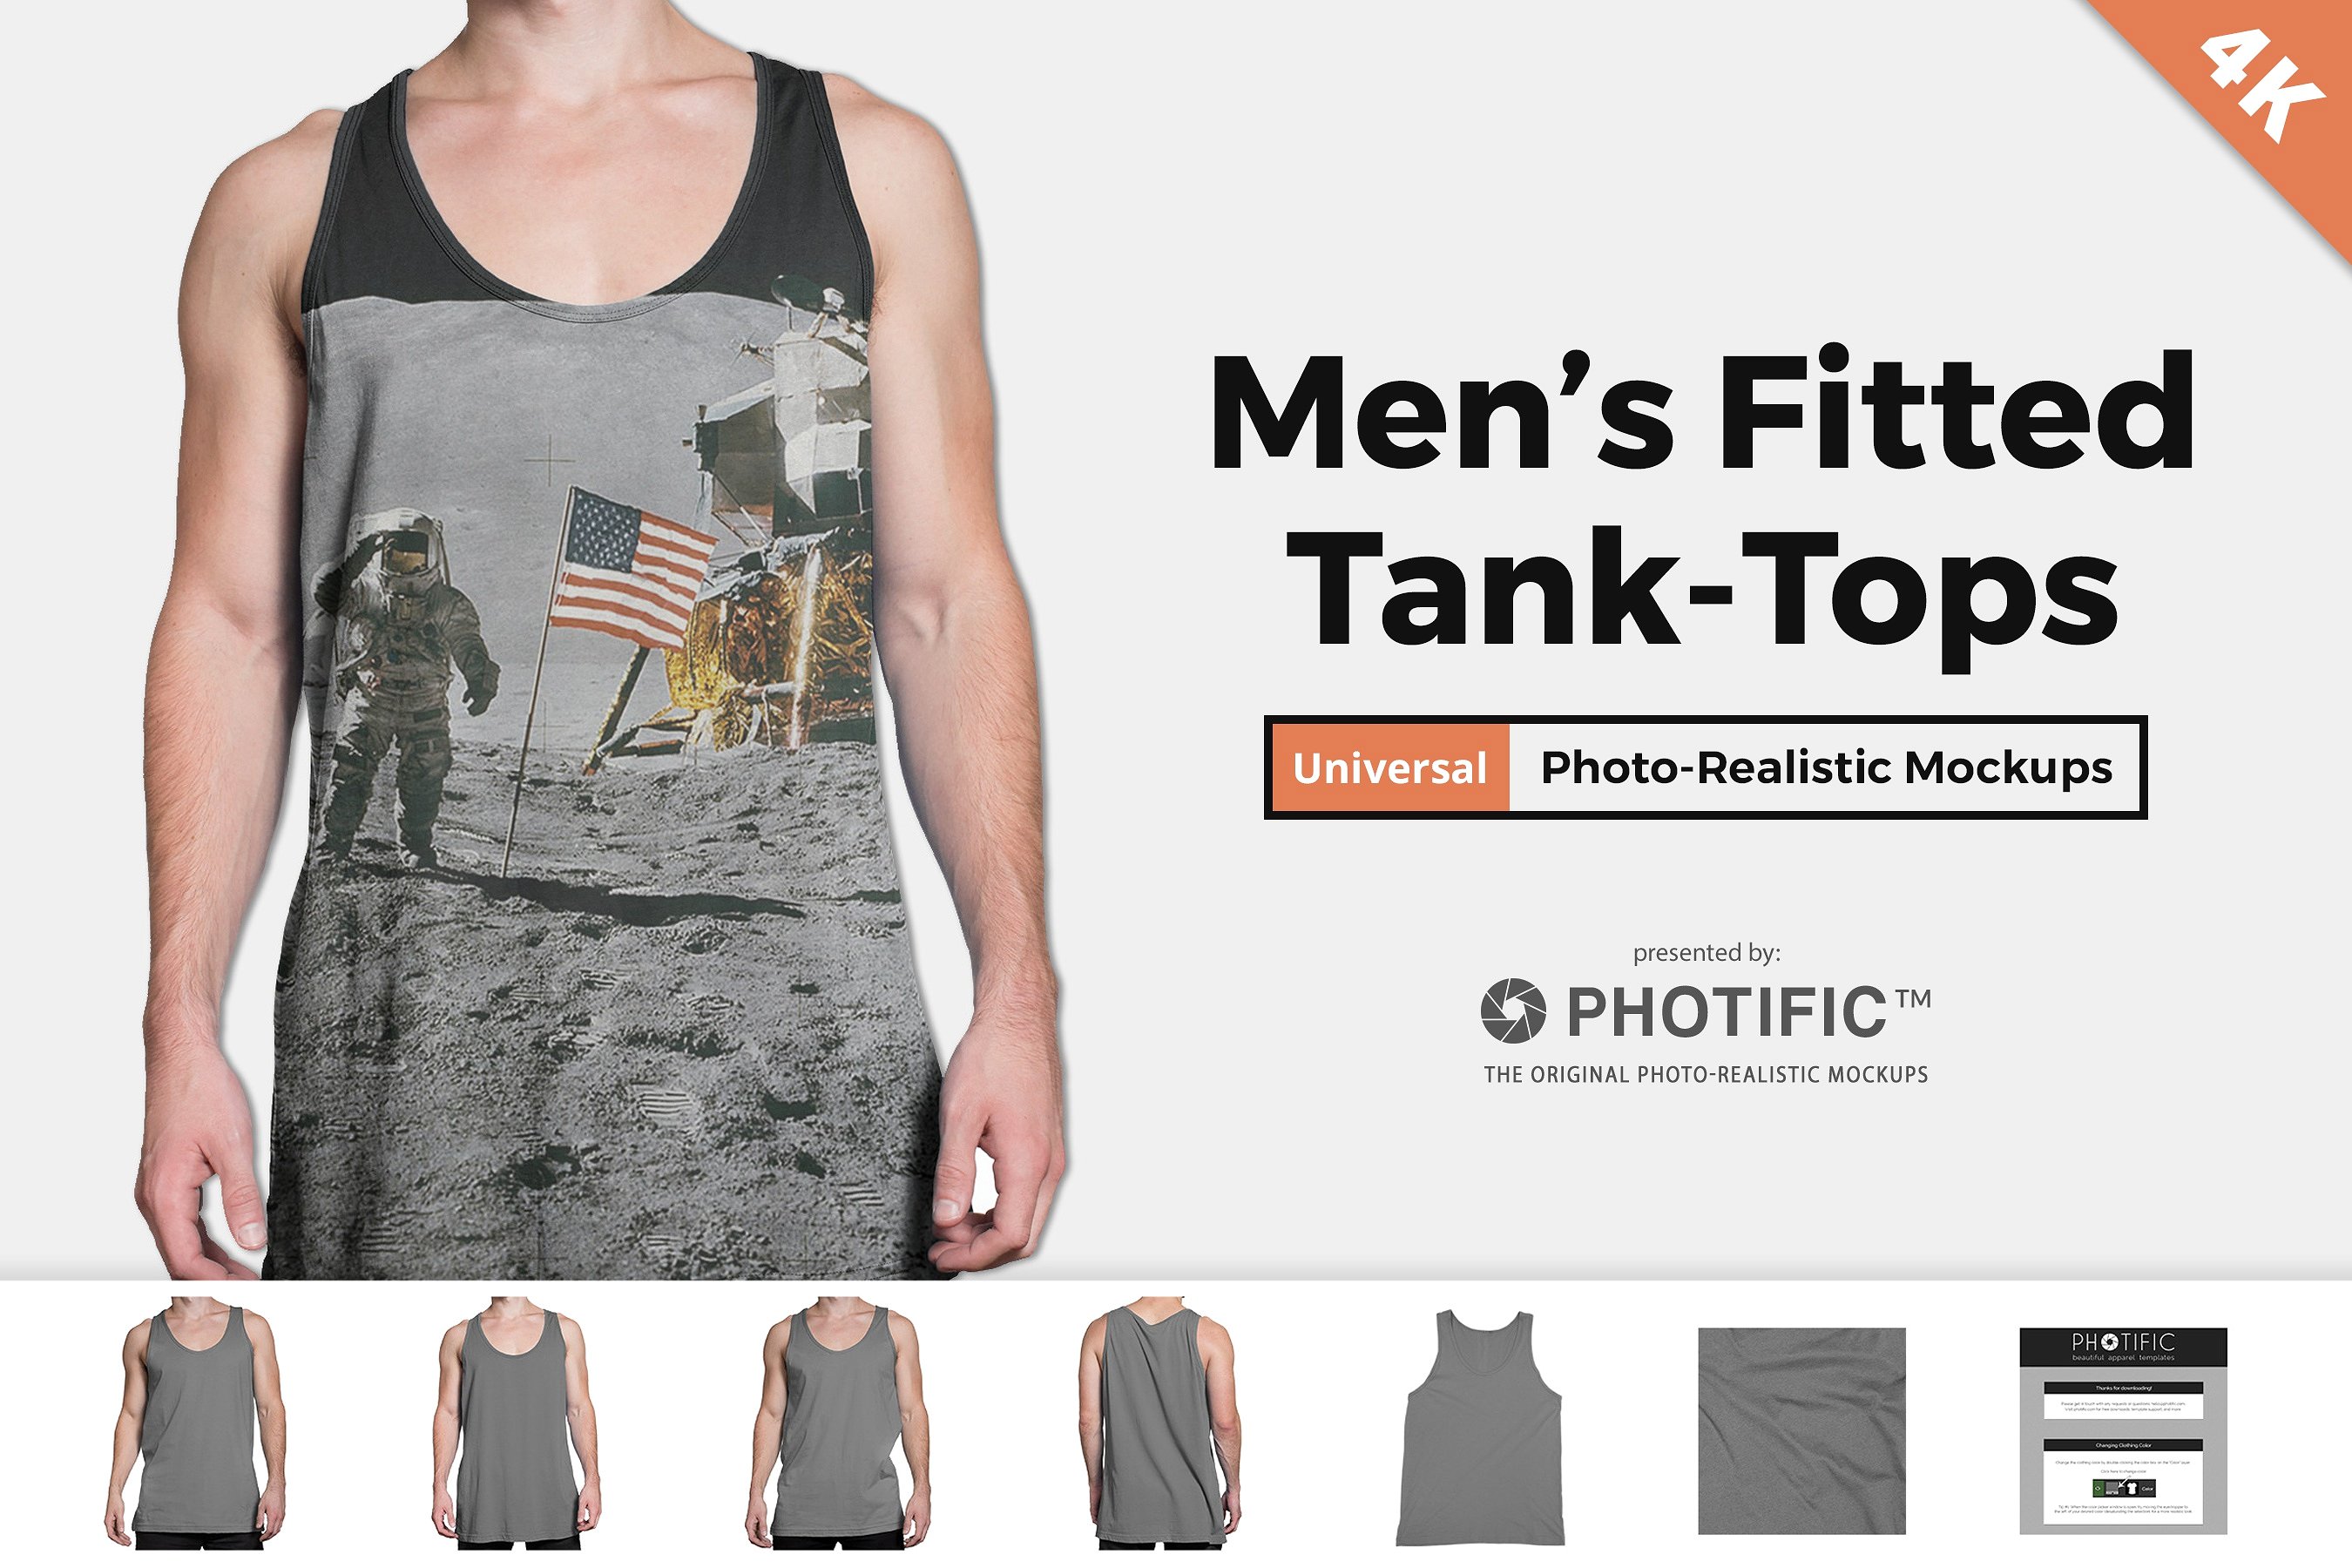 男模特衣着背心服饰贴图展示样机模版 Tank Top - A